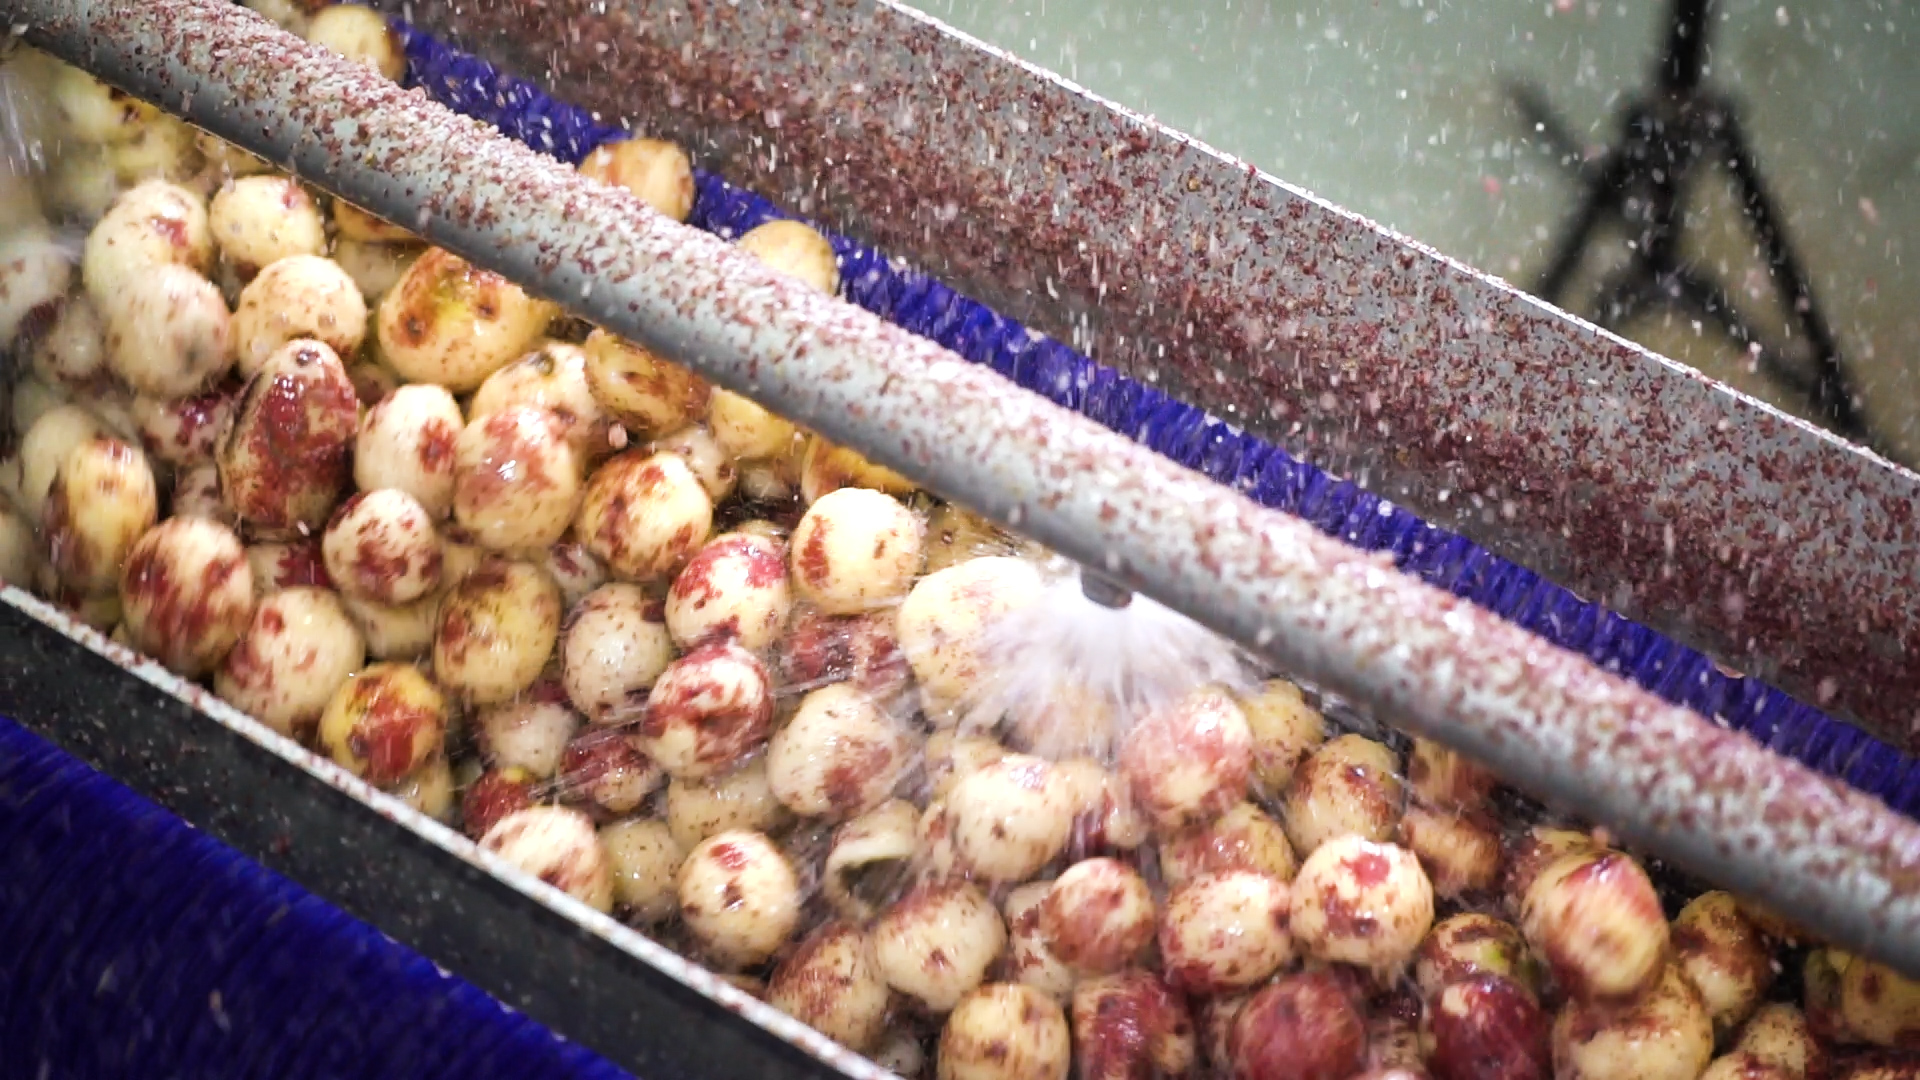 Vanmark's industrial potato processing equipment in action peeling potatoes